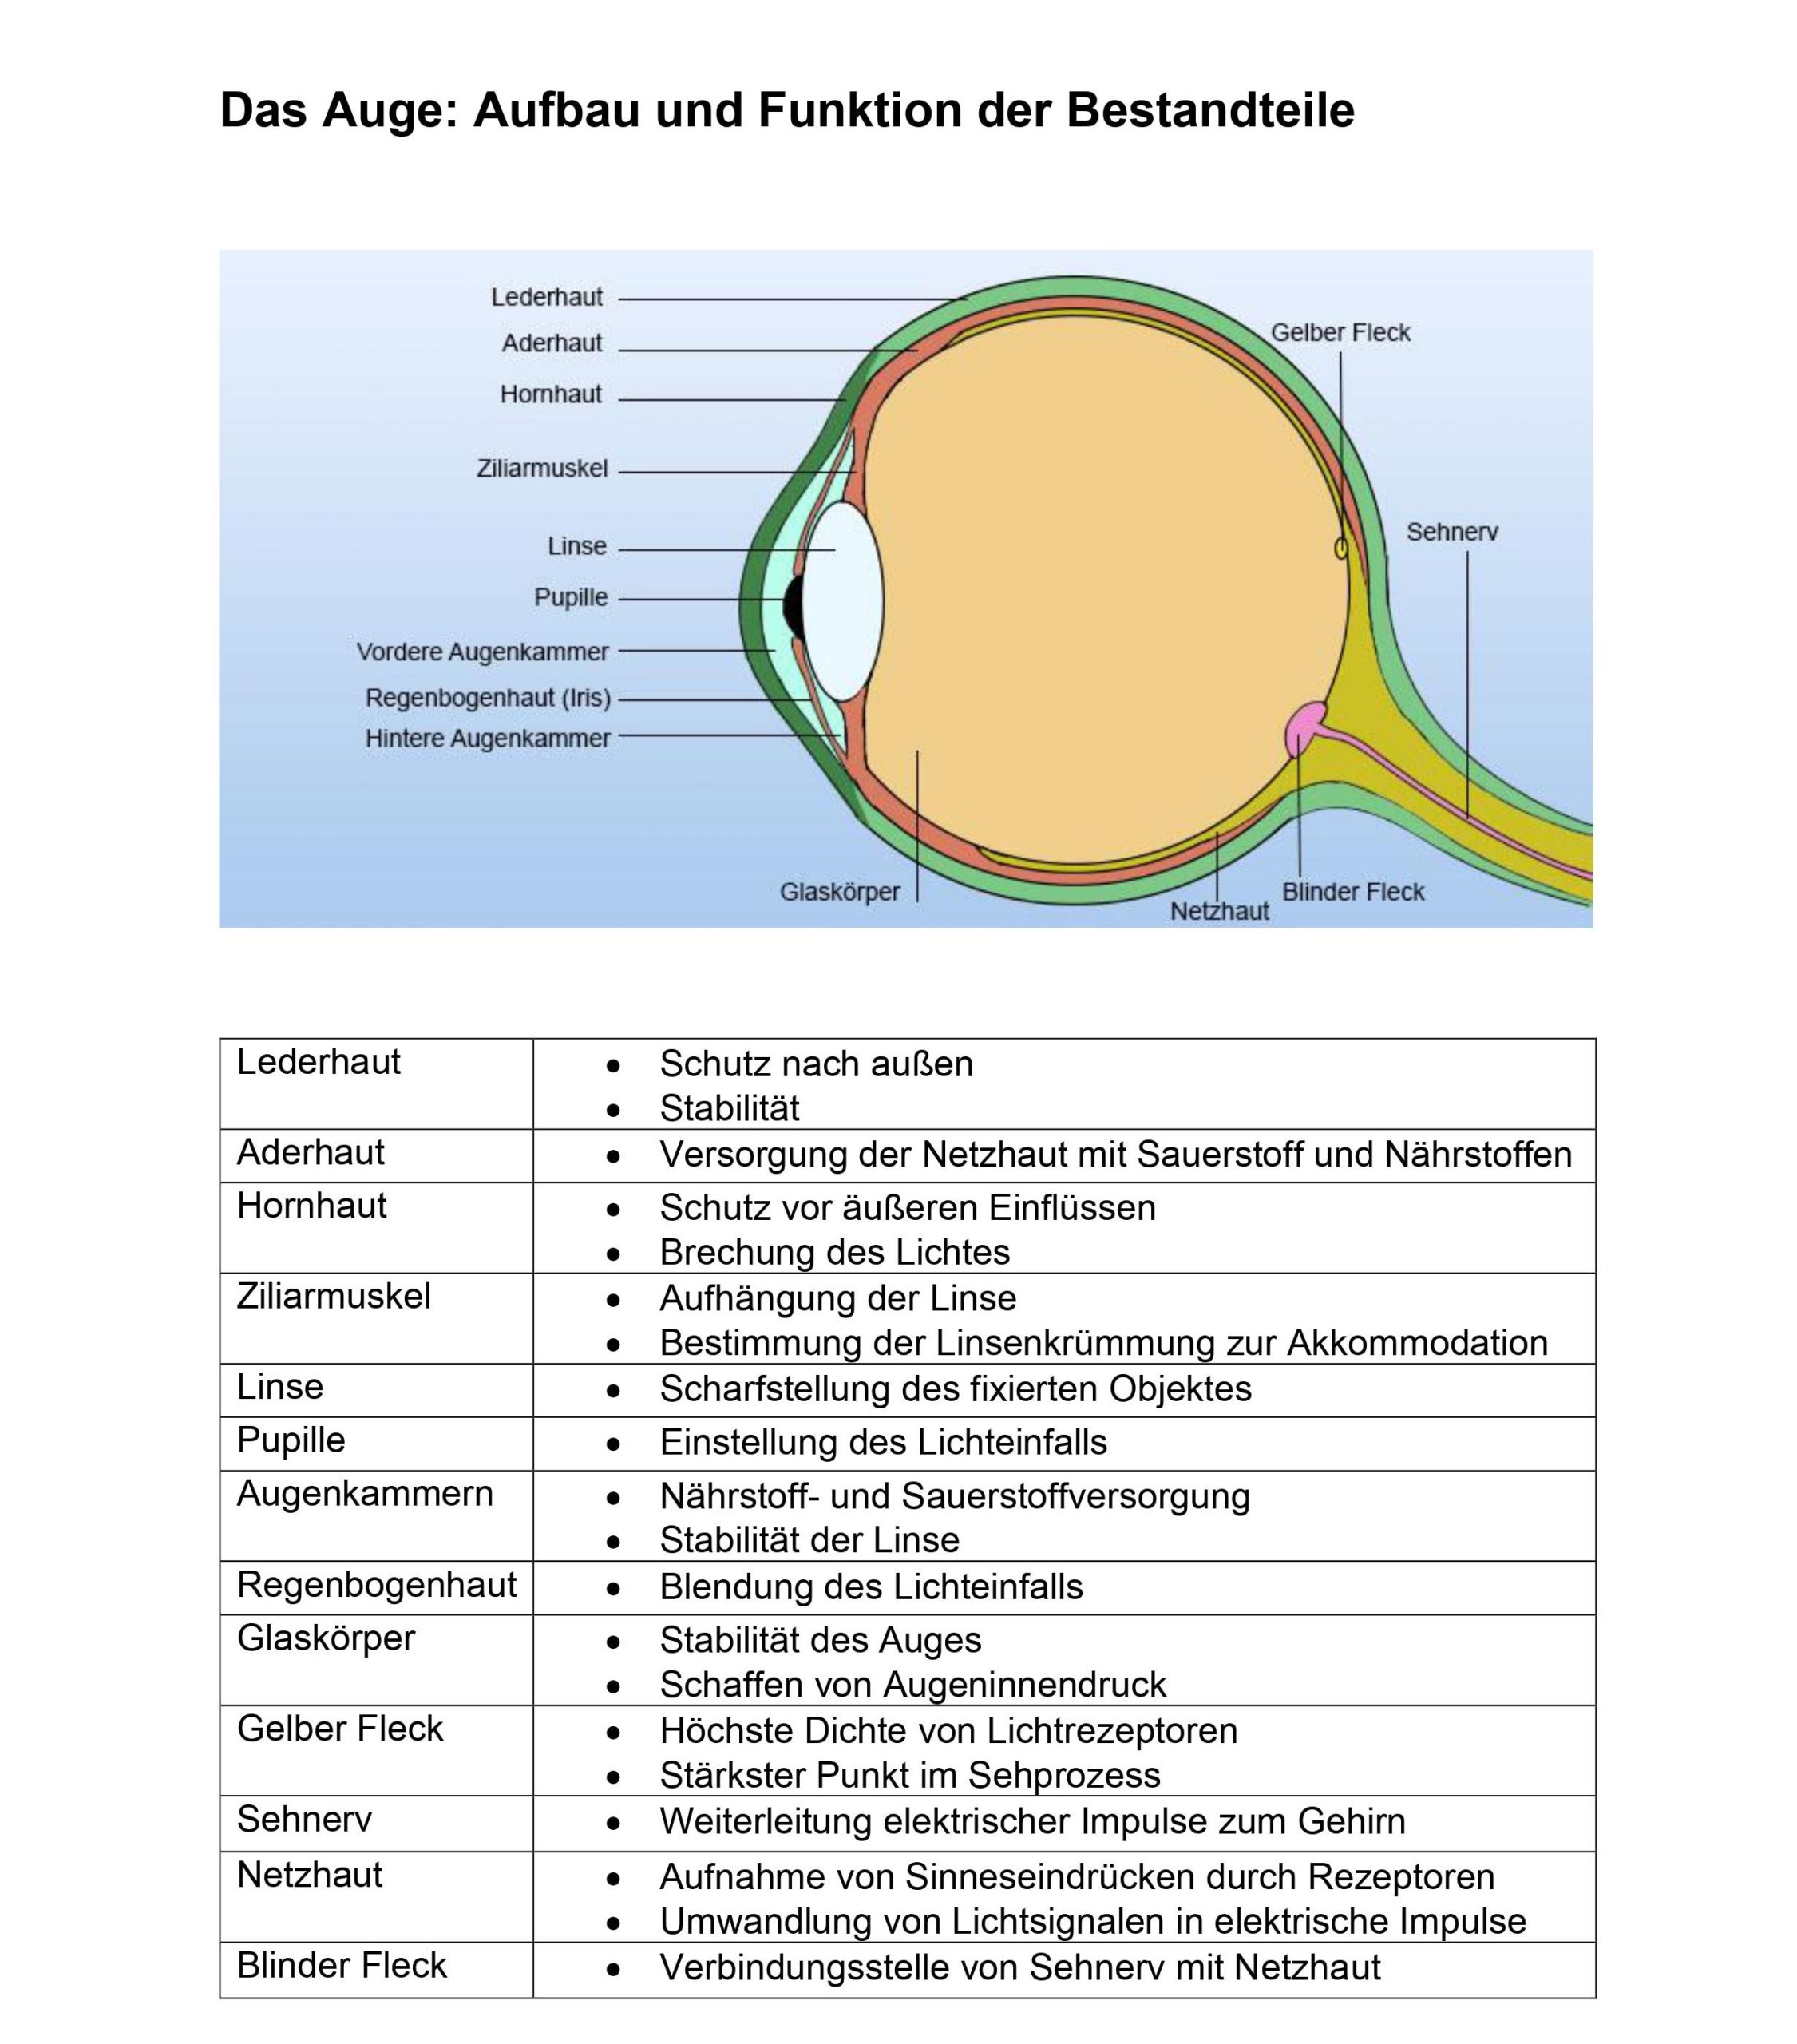 Auge Aufbau und Funktion Tabelle